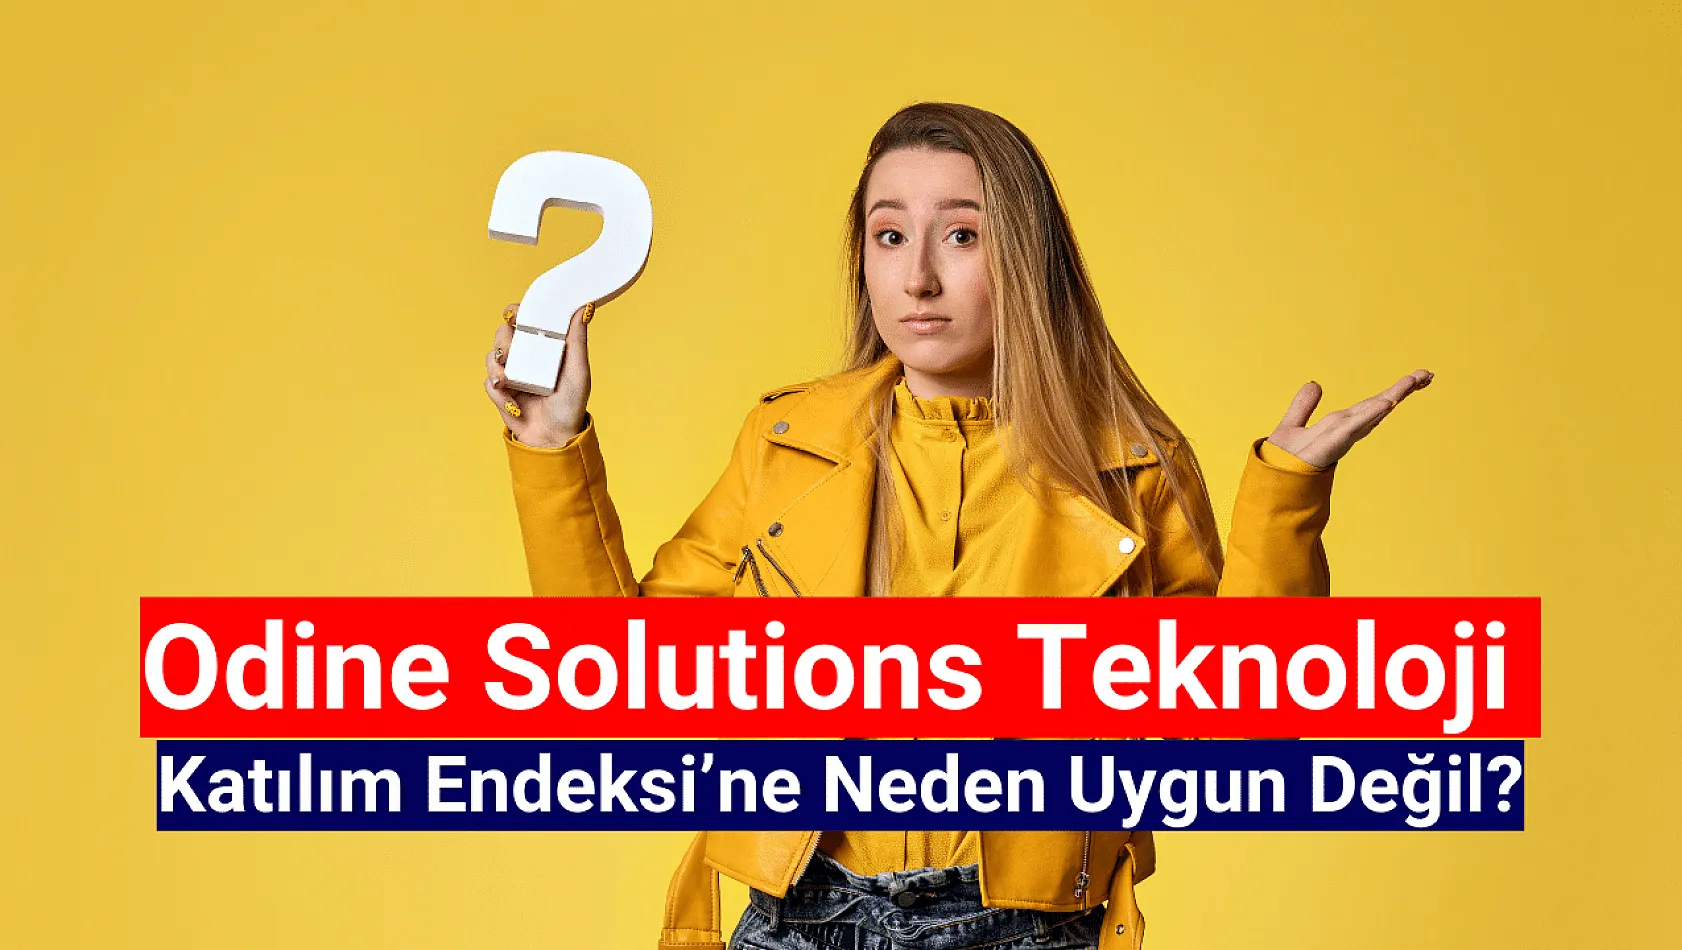 Odine Solutions Teknoloji katılım endeksine neden uygun değil?